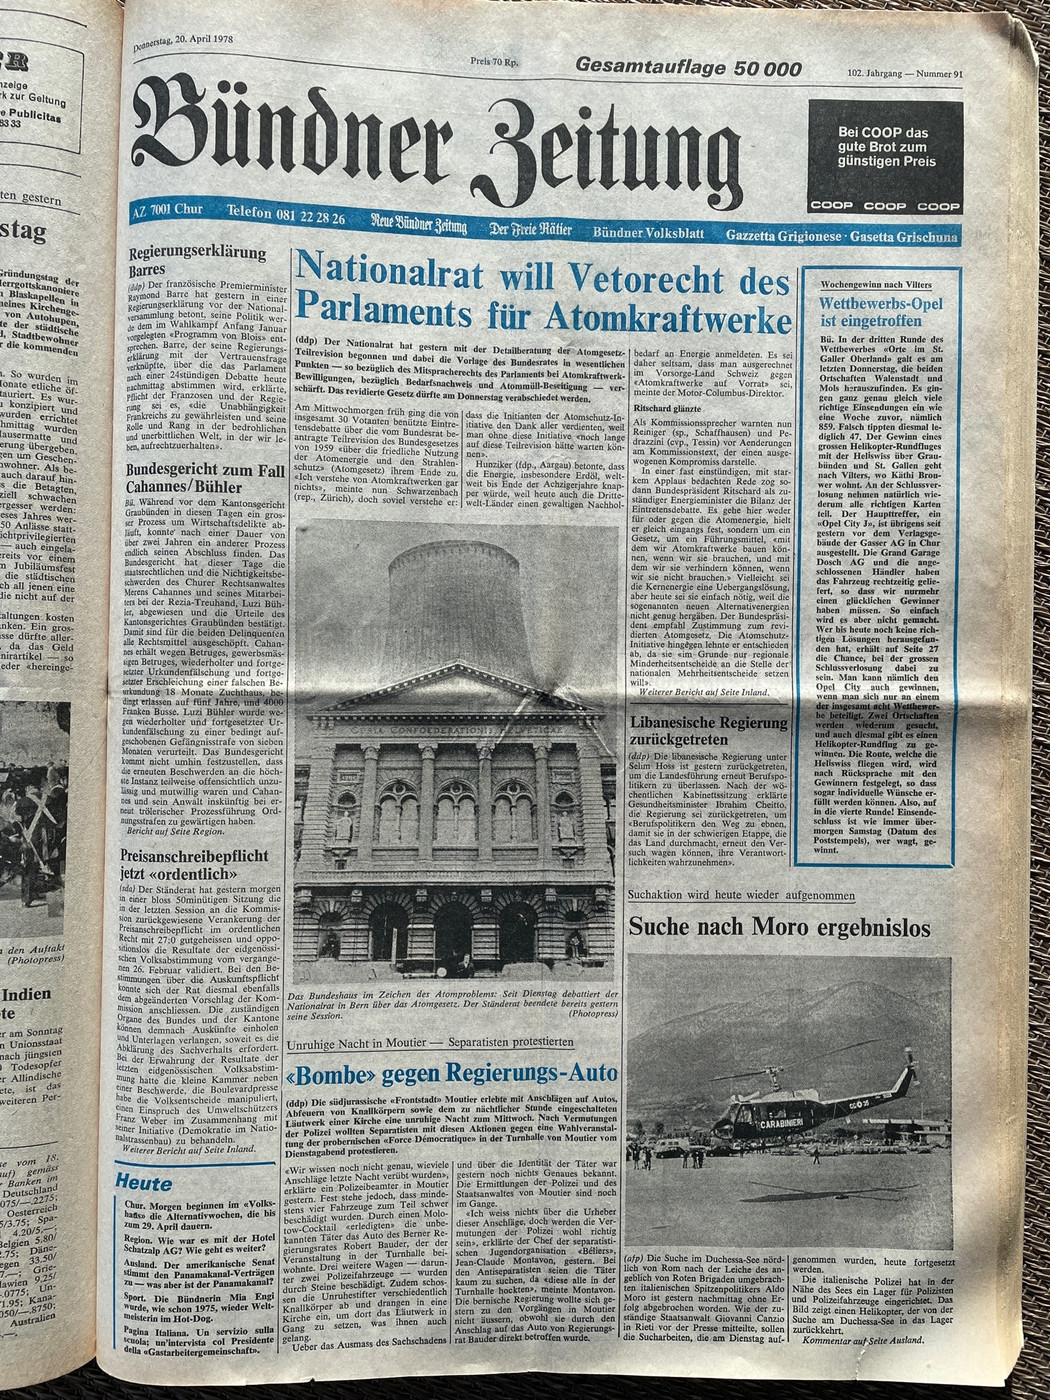 Aktuelle Themen: Die Titelseite der «Bündner Zeitung» vom 20. April 1978.